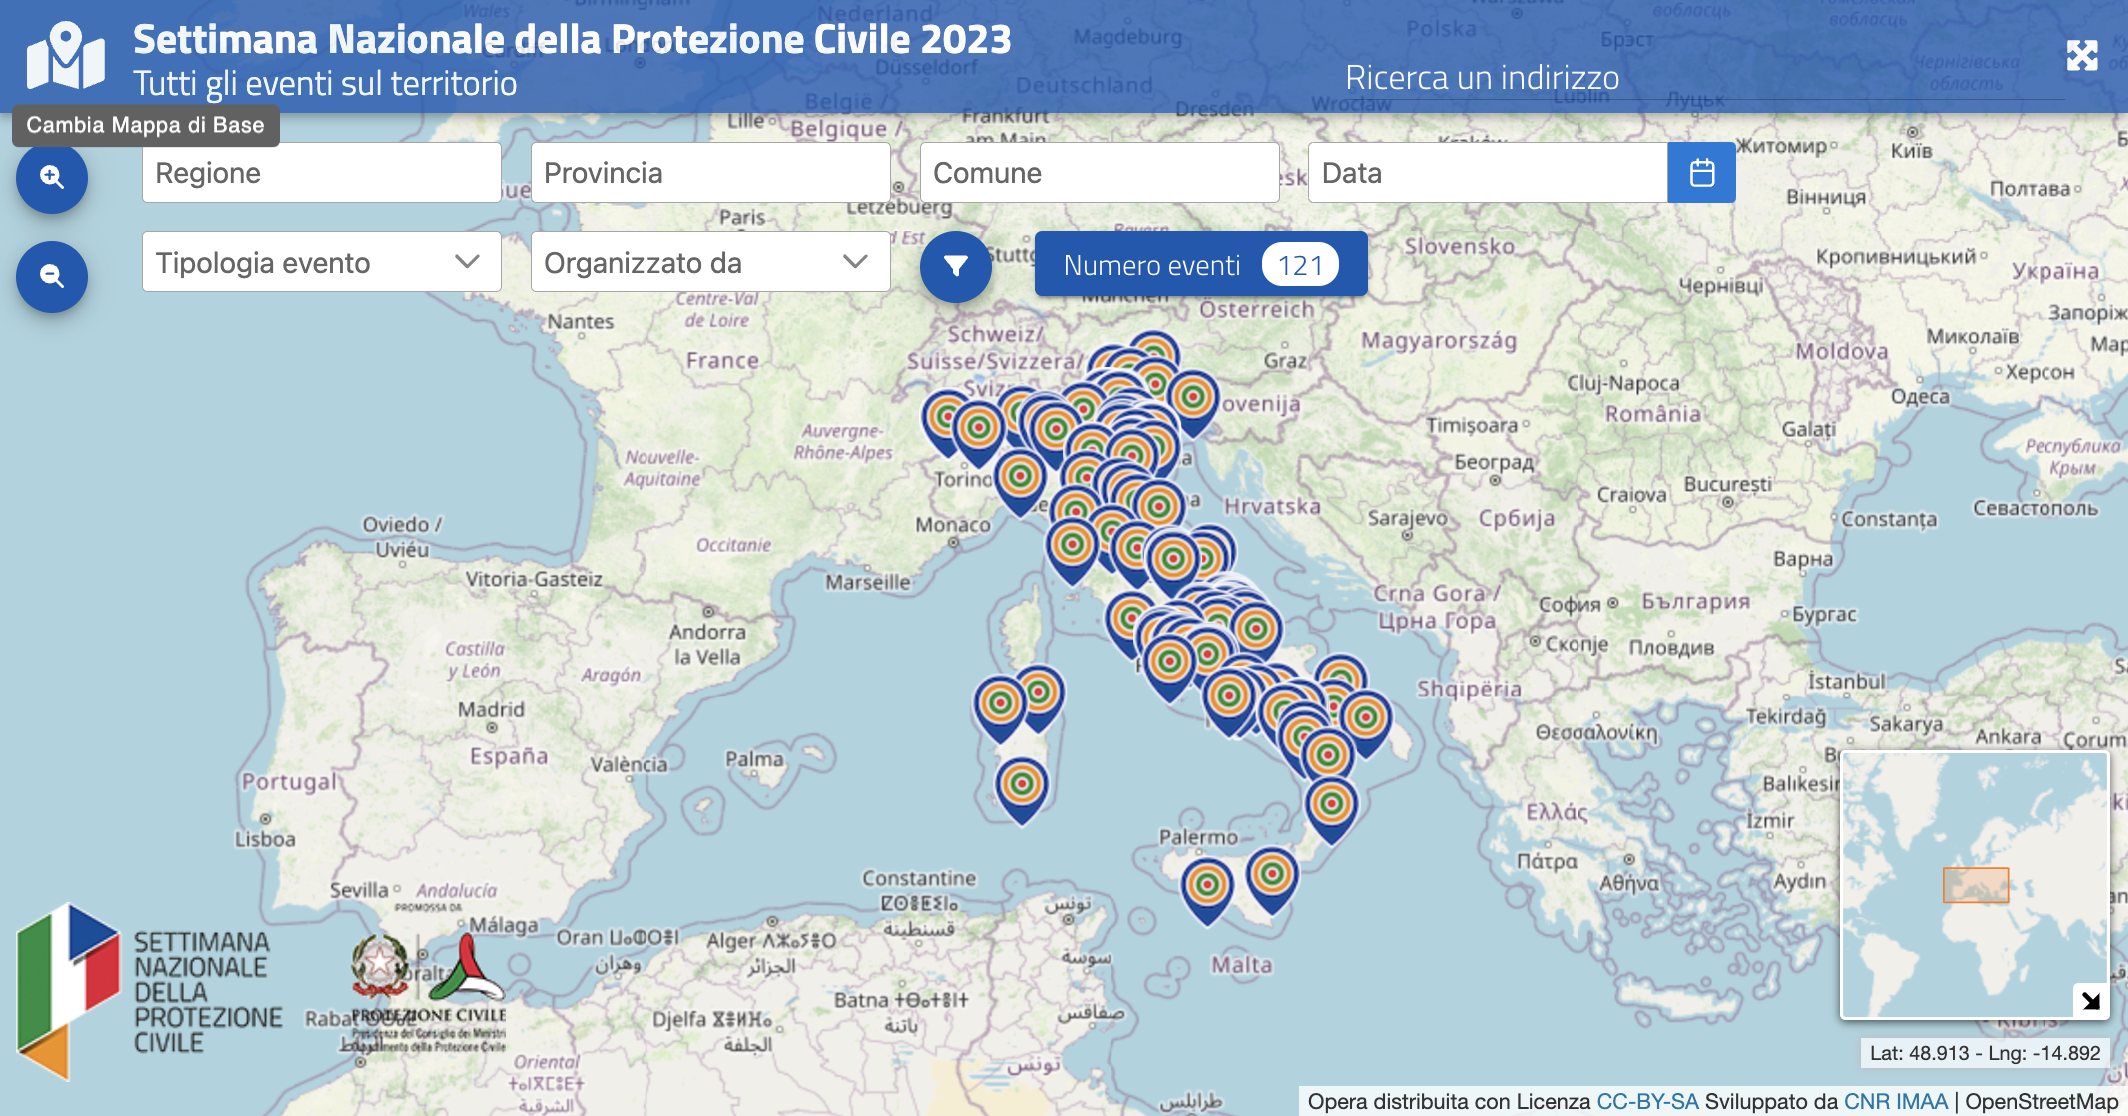 Mappe e dashboards Settimana della Protezione Civile